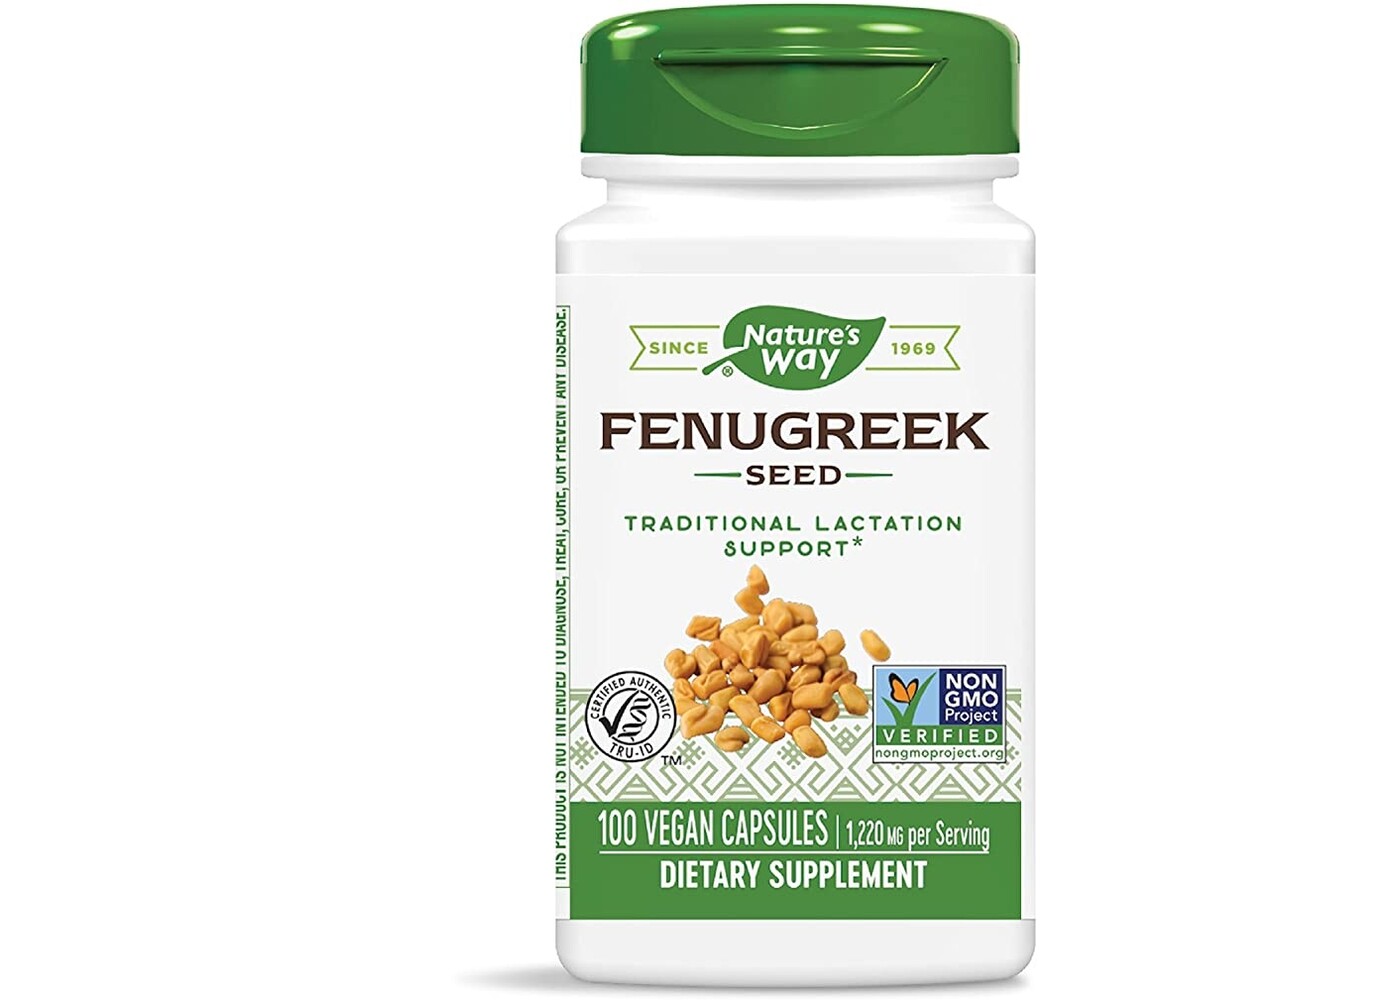 Fenugreek Seed, 610 mg, 100 Vegan Capsules